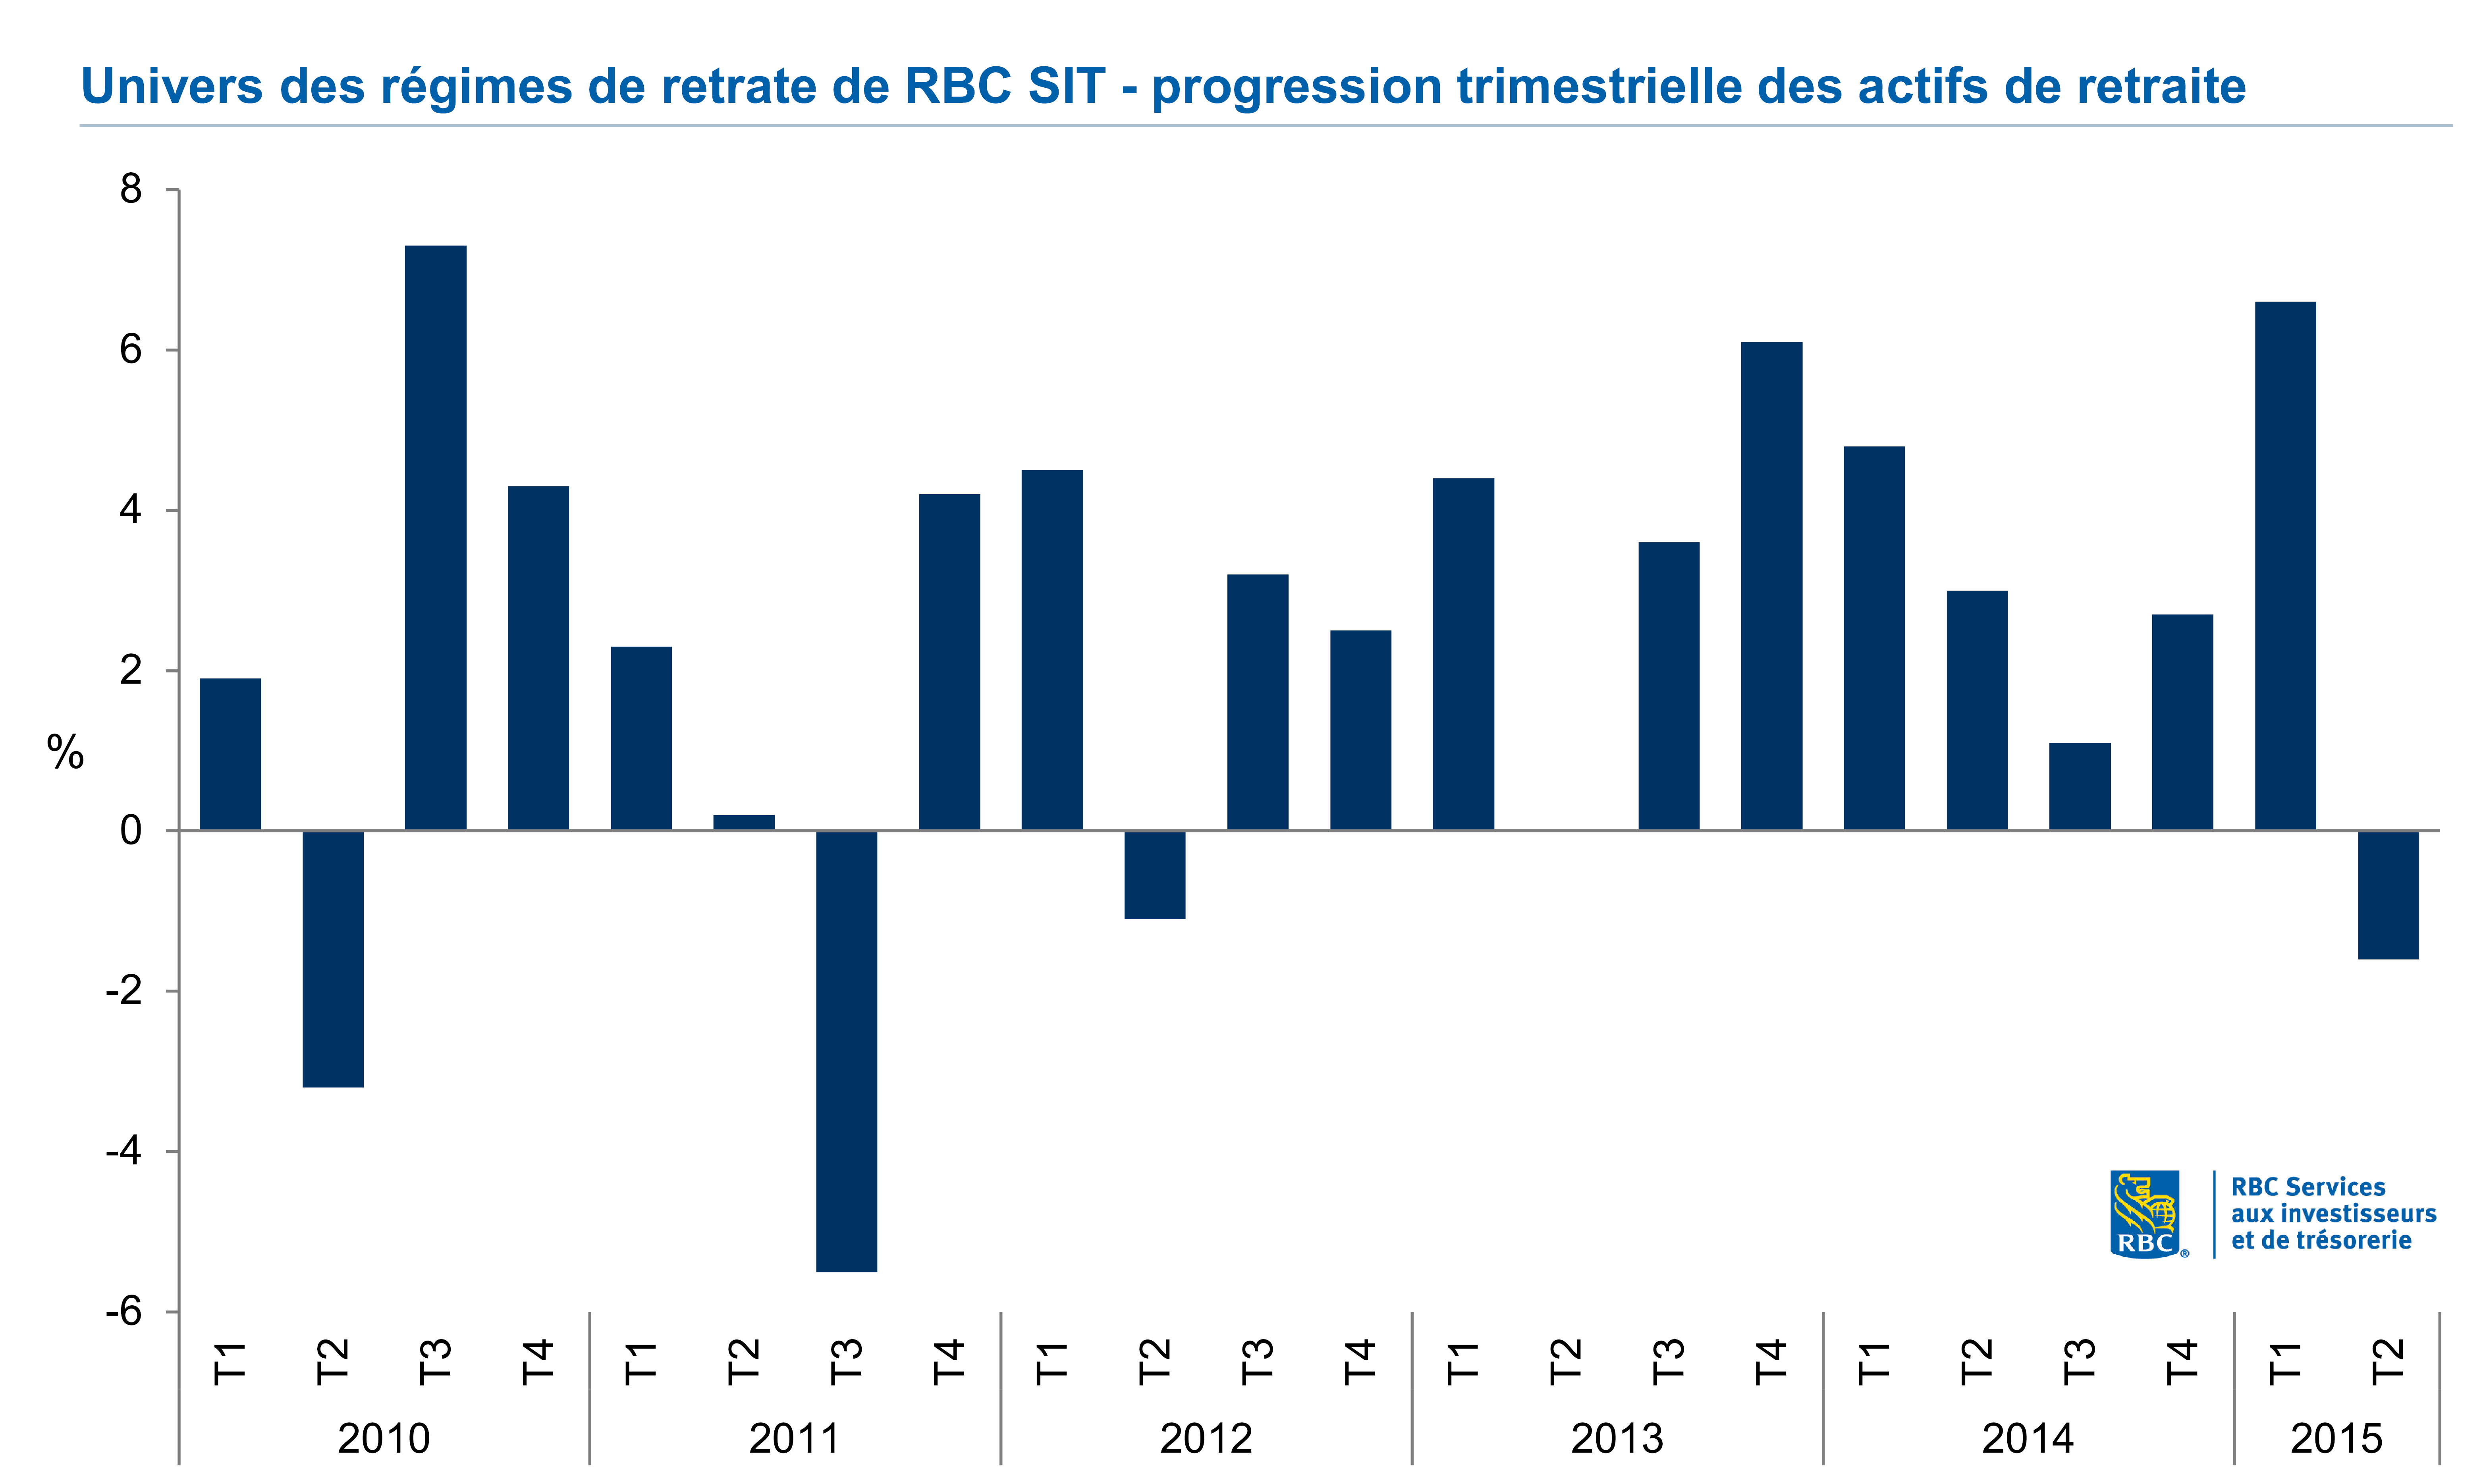 Univers des régimes de retrate de RBC SIT- progression trimestrielle des actifs de retraite 2010-Q2 2015